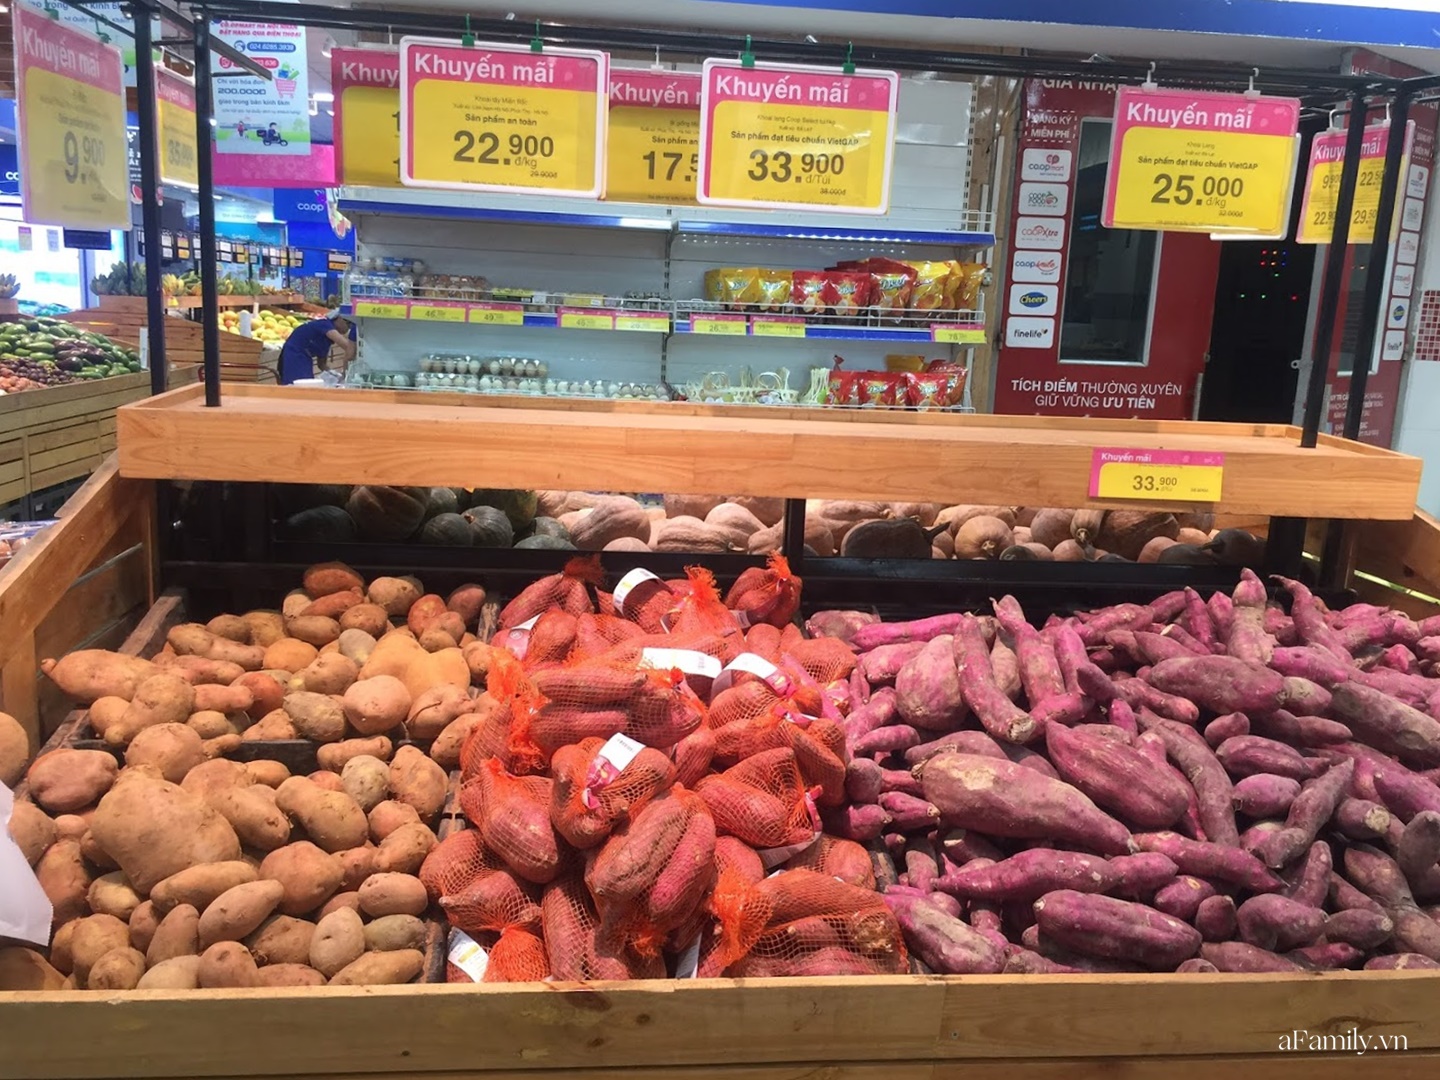 Nông sản Việt chiếm ưu thế trên kệ hàng ở các siêu thị lớn - Ảnh 5.